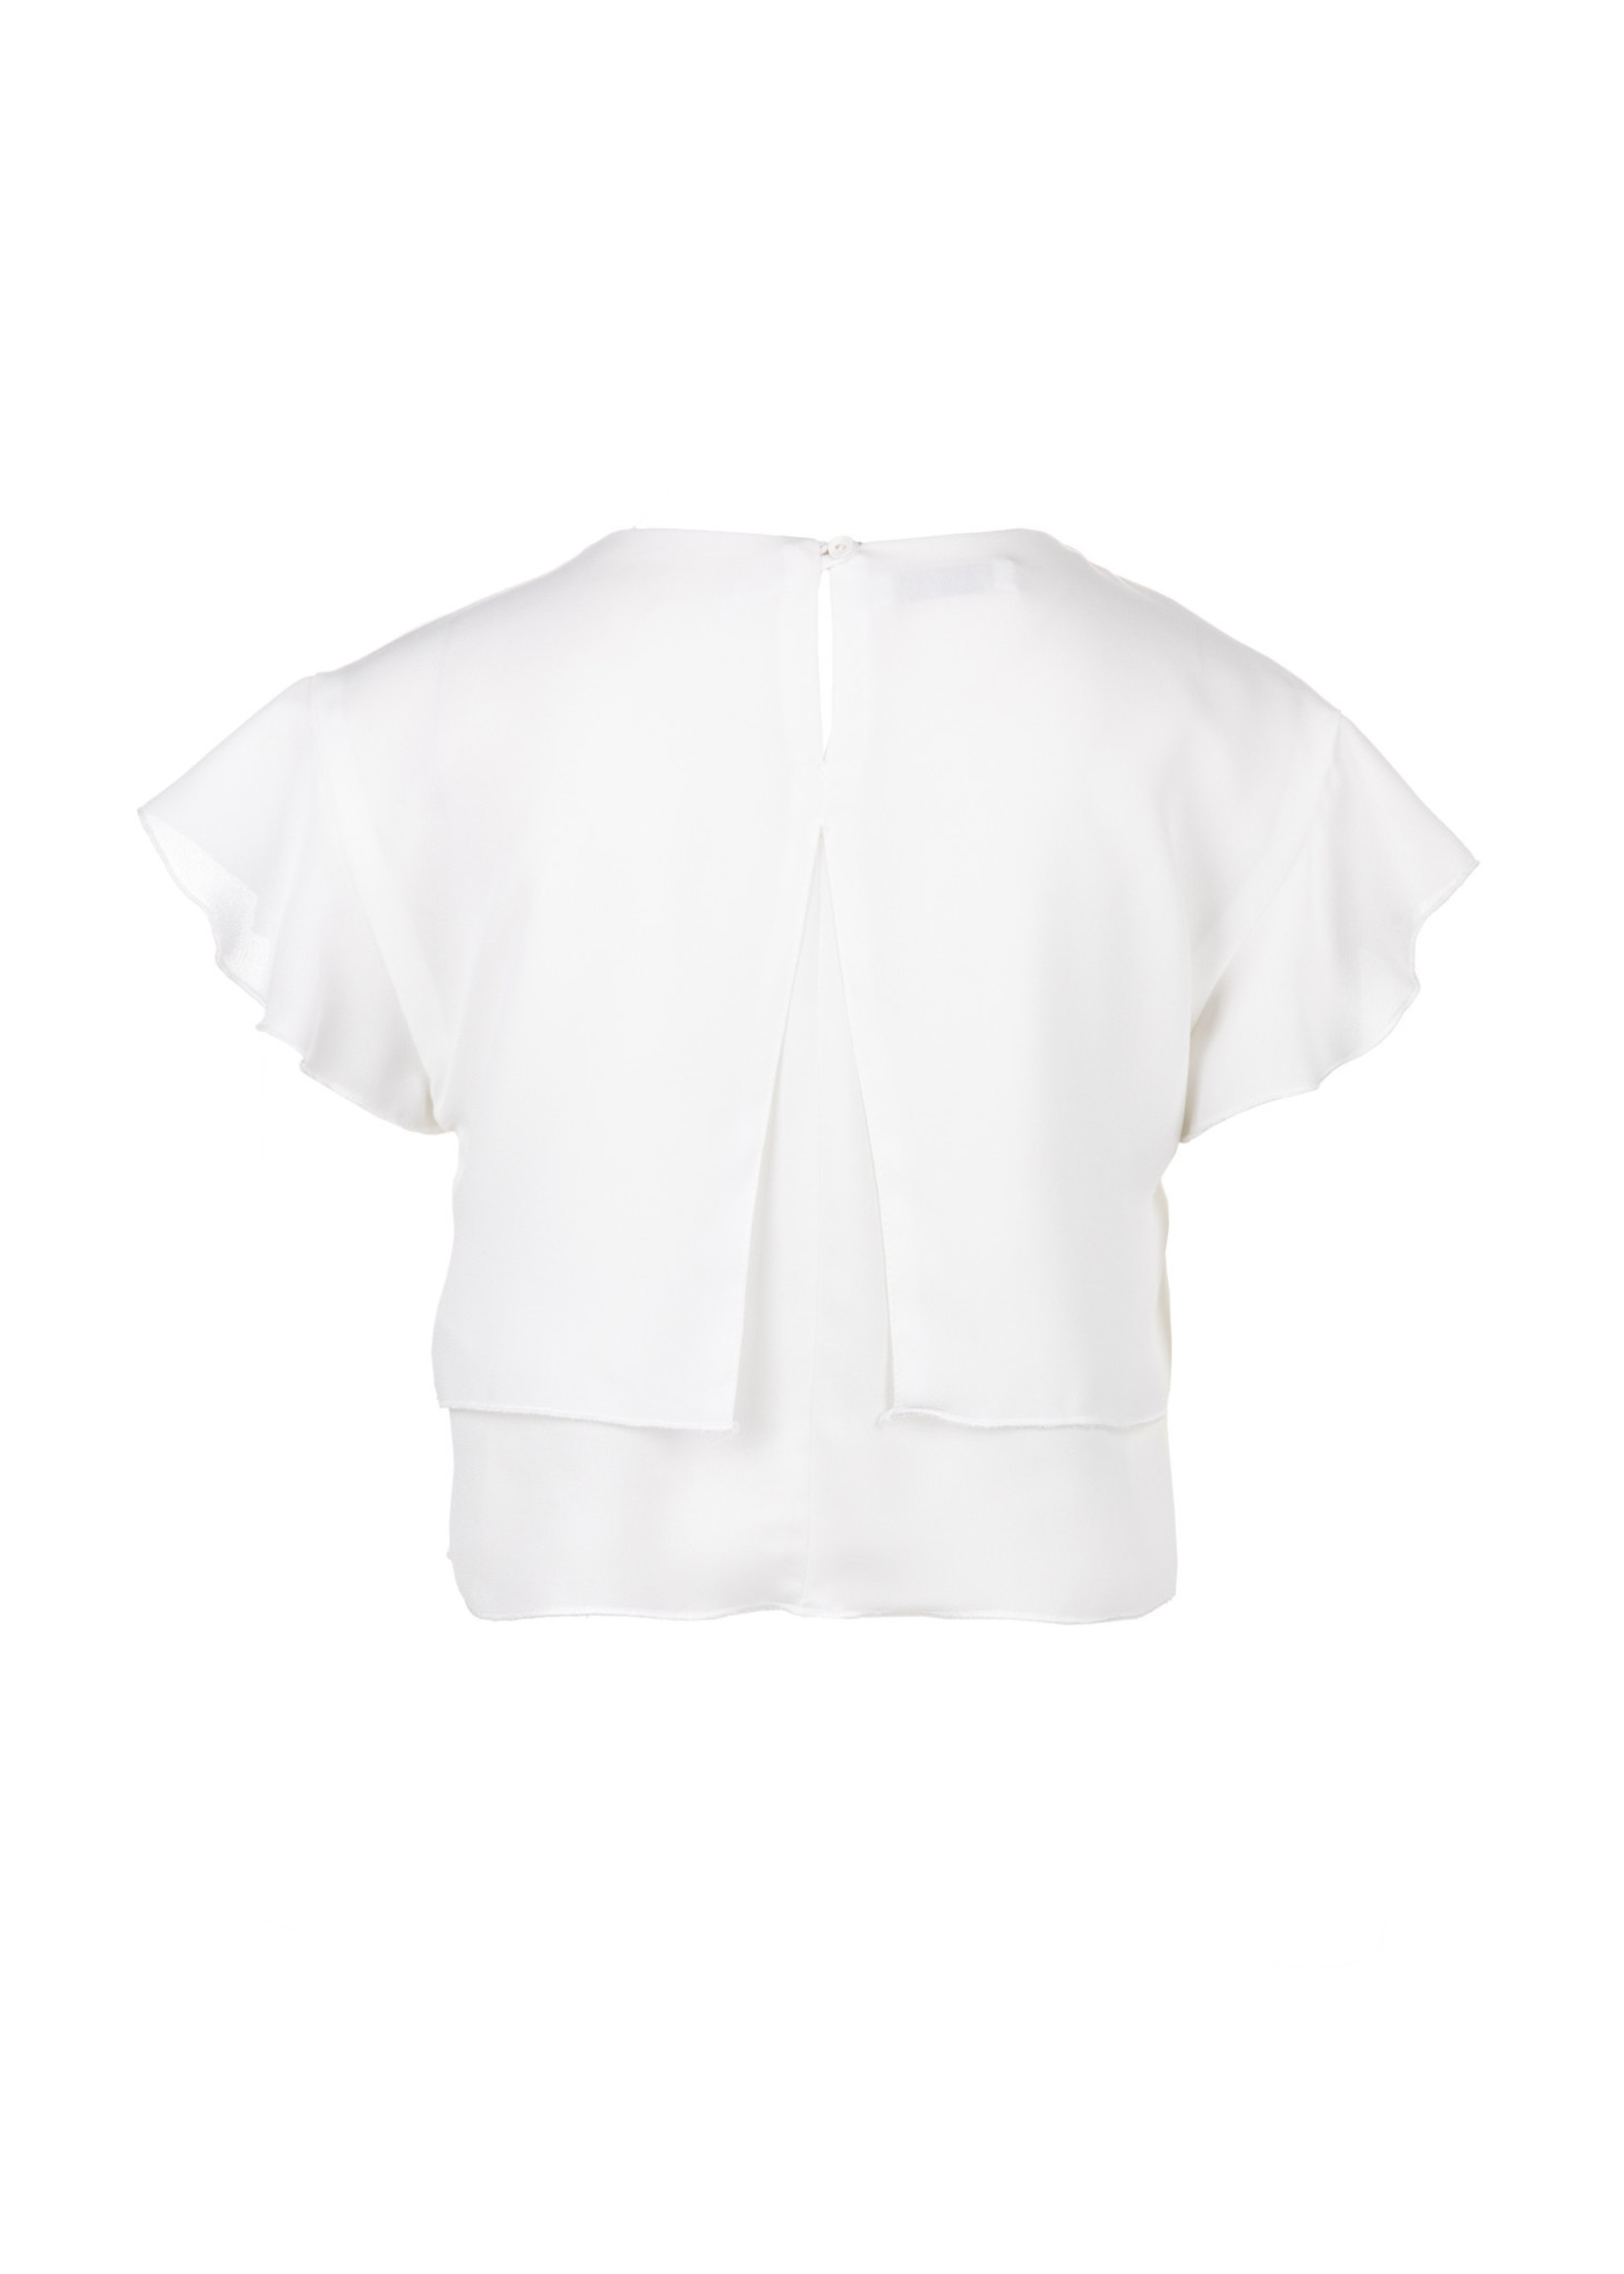 Elsy Elsy blouse white - Baltimore 4711